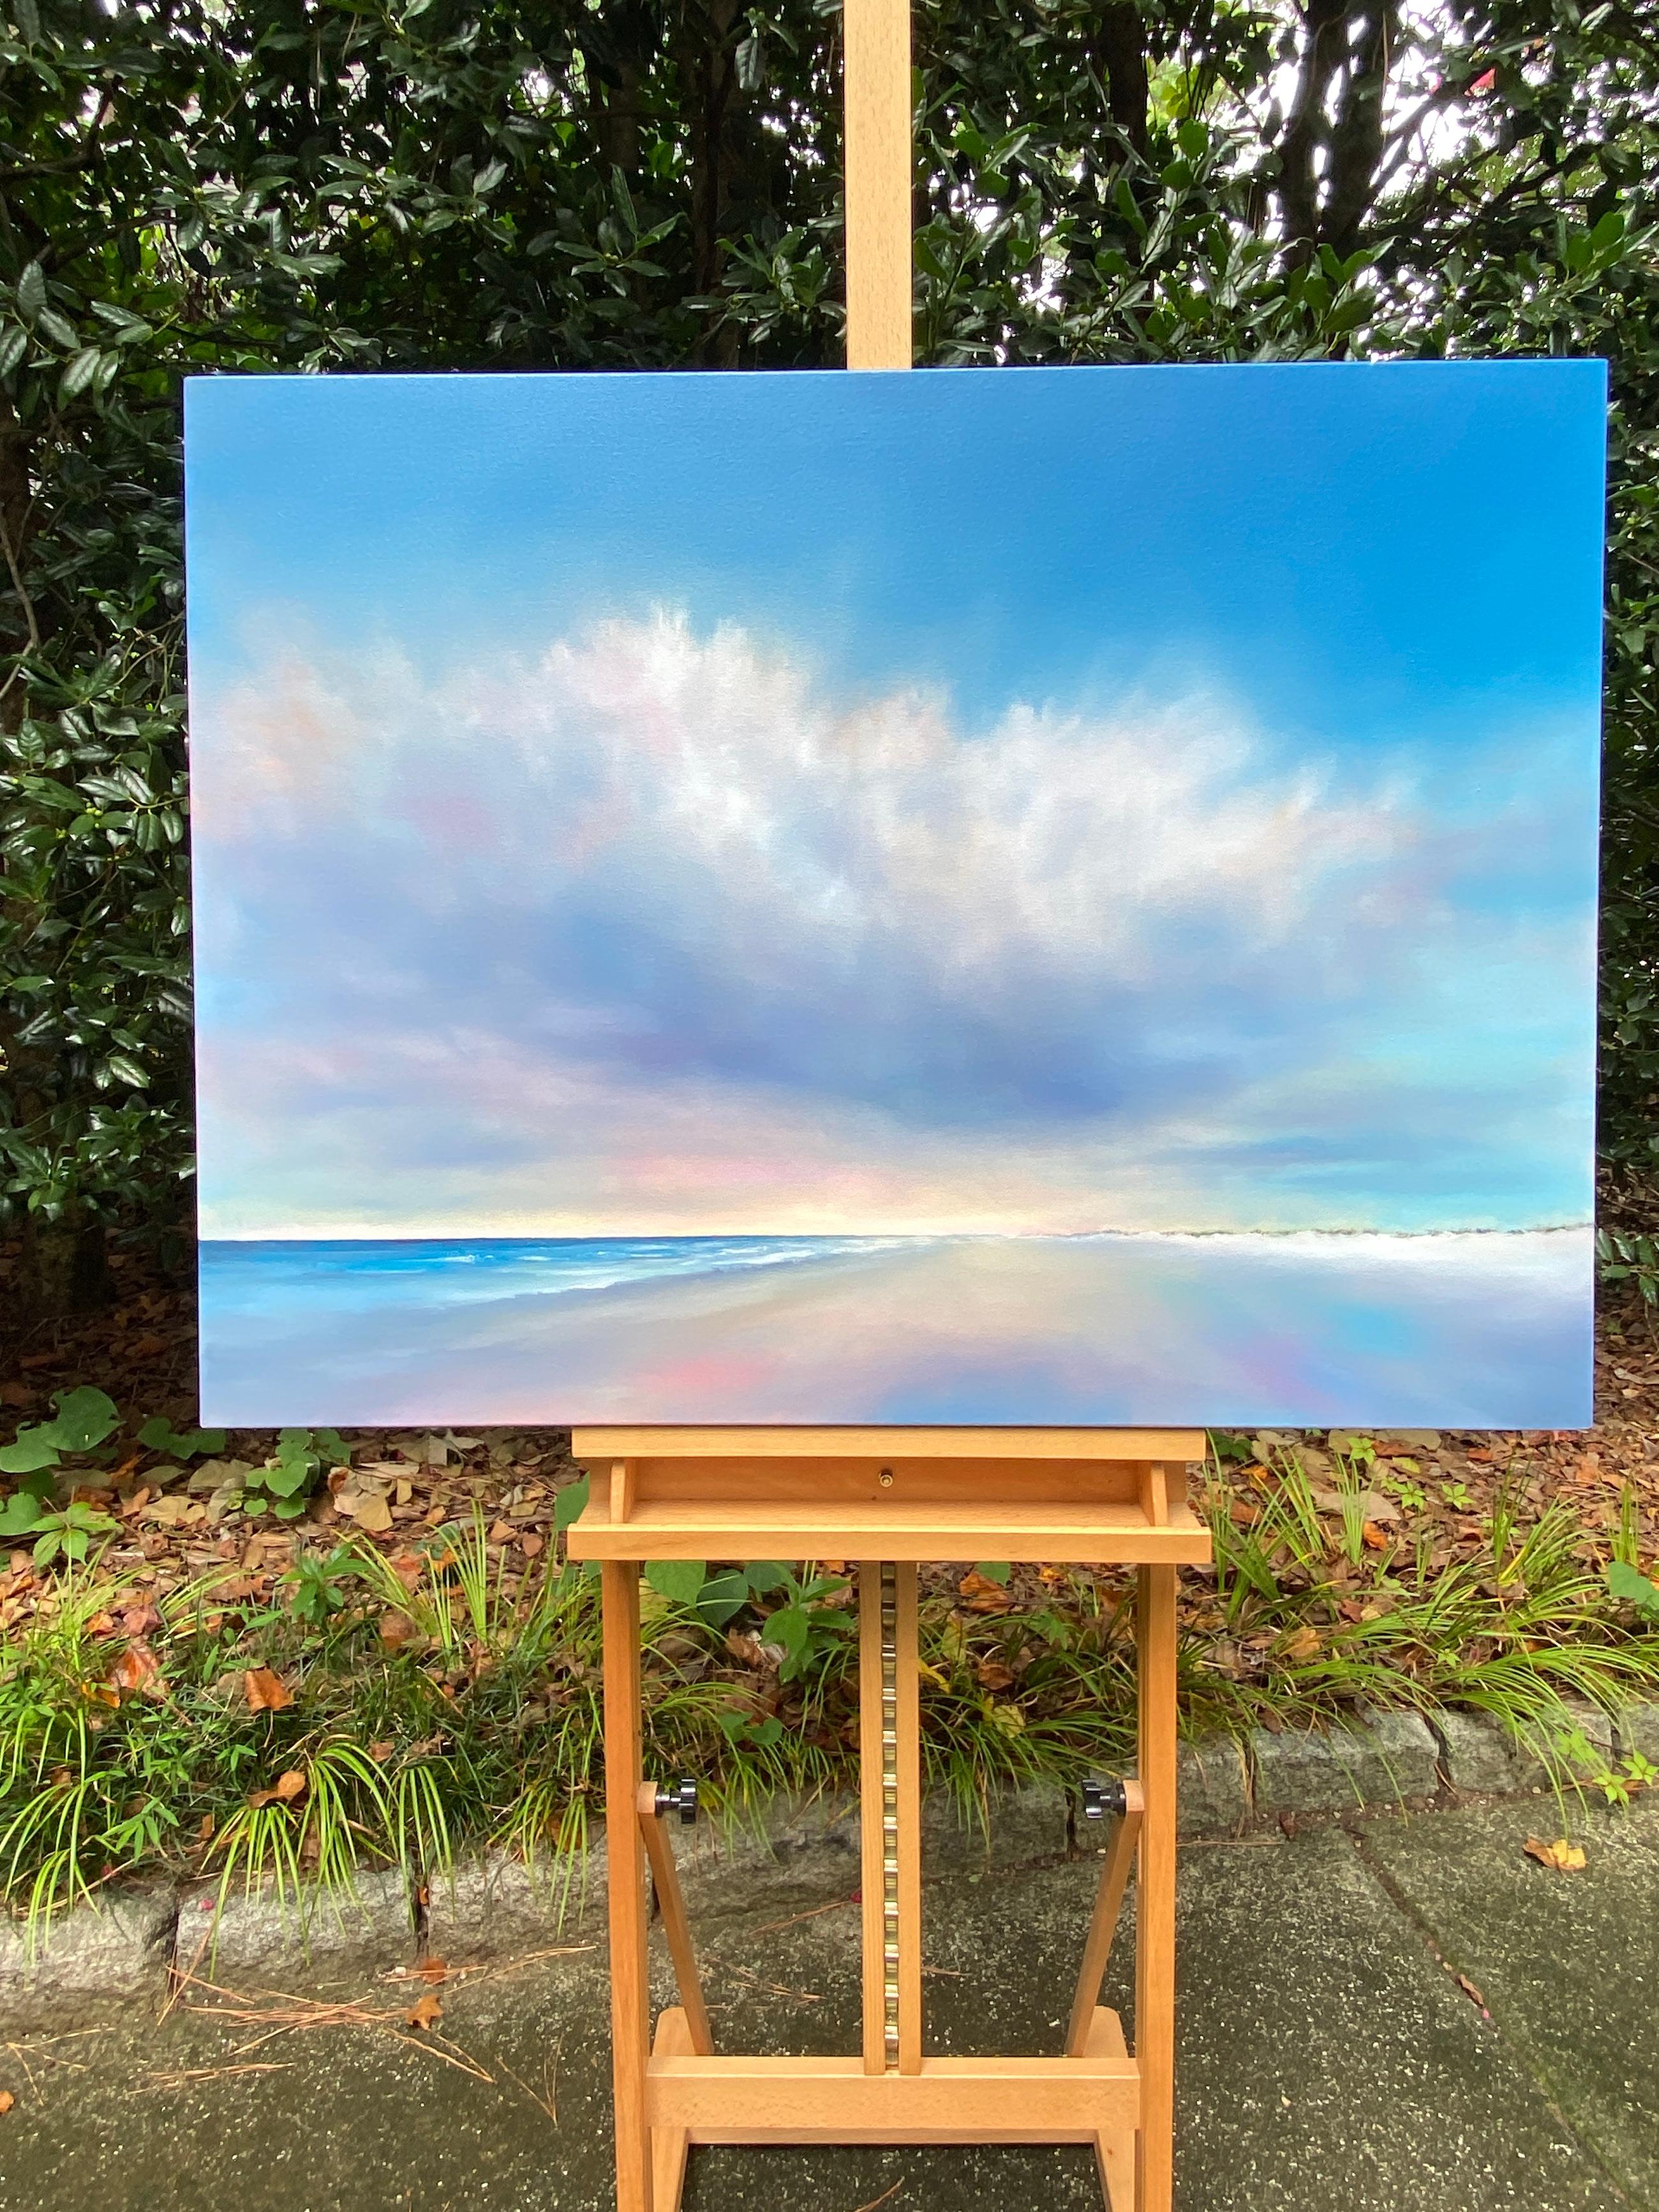 <p>Commentaires de l'artiste<br />Un paysage marin serein avec un nuage rougeoyant qui plane délicatement au-dessus d'un rivage tranquille. L'artiste Nancy Hughes Miller utilise une variété de couleurs pastel pour exprimer le ciel, la plage de sable